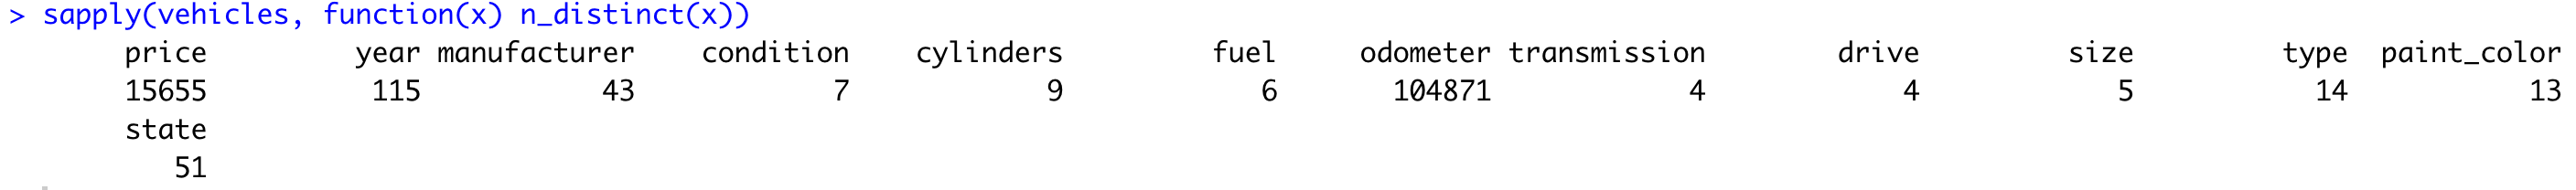 Image 4 - Number of unique elements per attribute